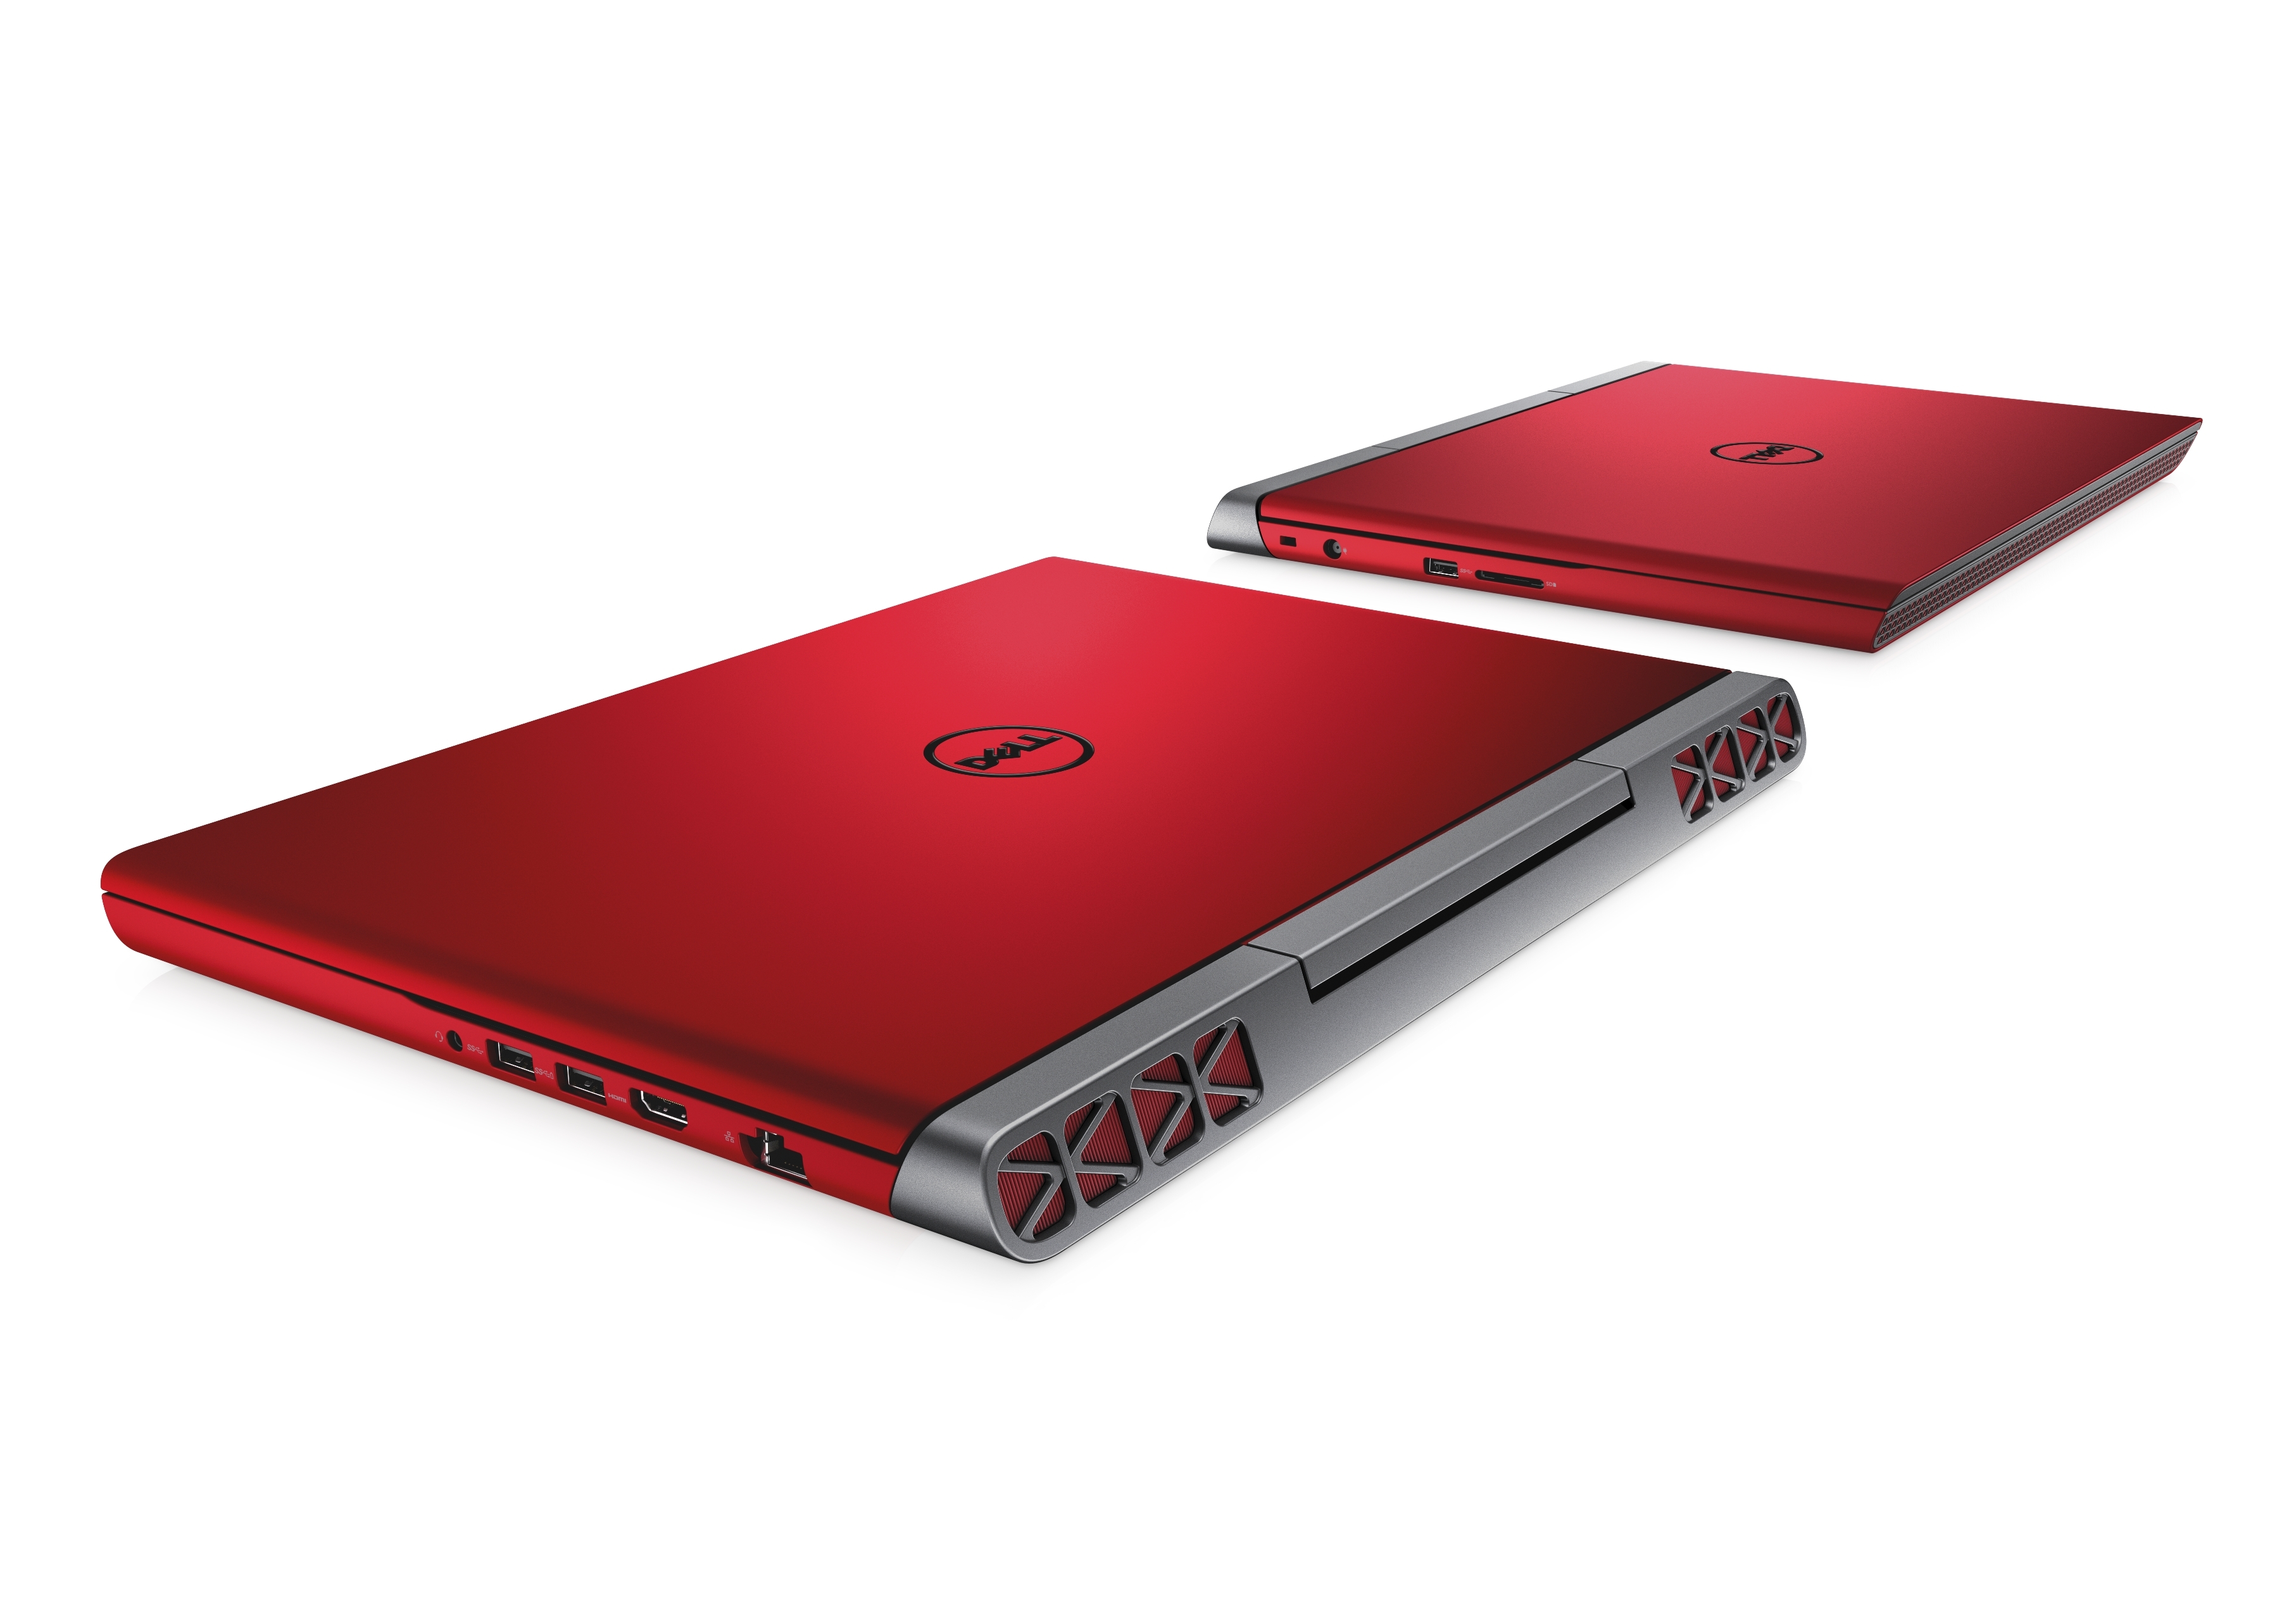 Dell inspiron 7567. Dell Inspiron 15 красный. Dell Inspiron красный. Dell Inspiron красный игровой ноутбук.